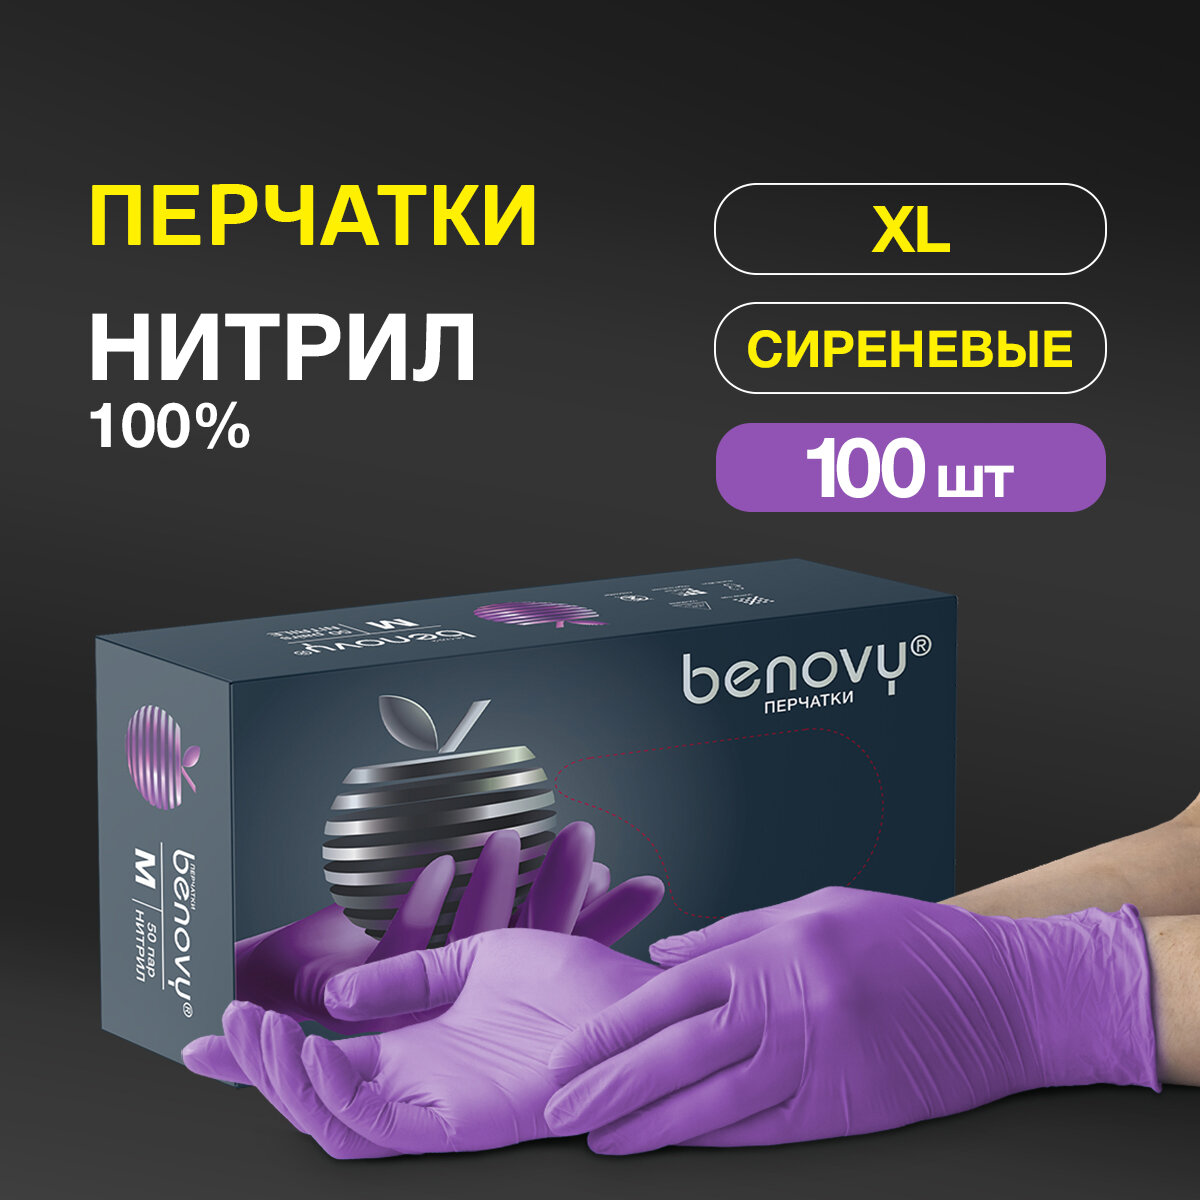 Перчатки смотровые Benovy Nitrile MultiColor текстурированные на пальцах, 50 пар, размер: XL, цвет: сиреневый, 1 уп.